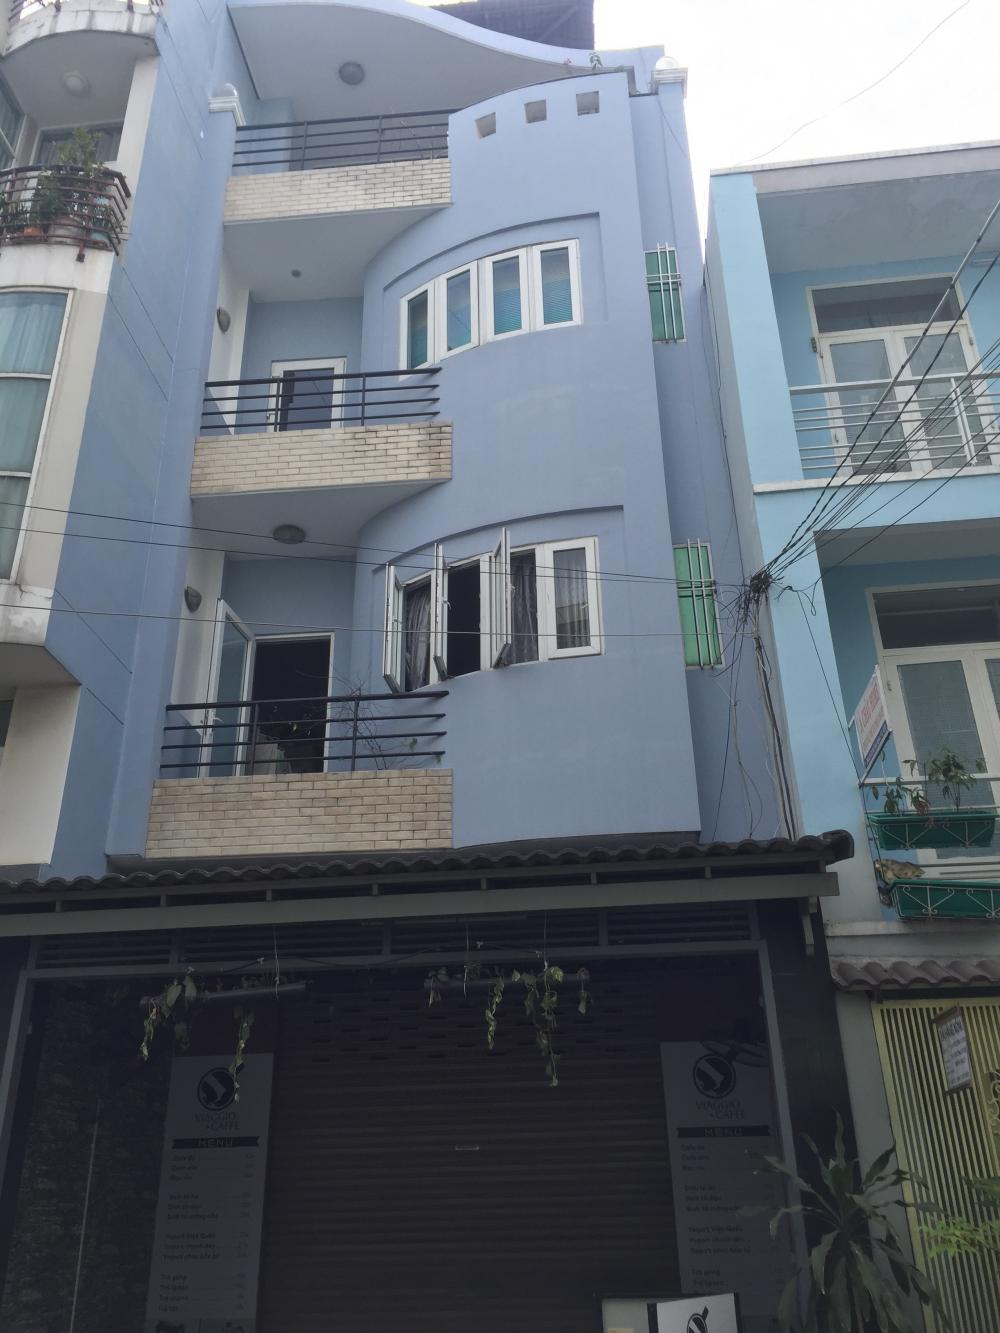 Bán nhà 1T3L Bùi Hữu Nghĩa, P. 2, quận Bình Thạnh, giá 9.5 tỷ còn TL, liên hệ: 0348210144